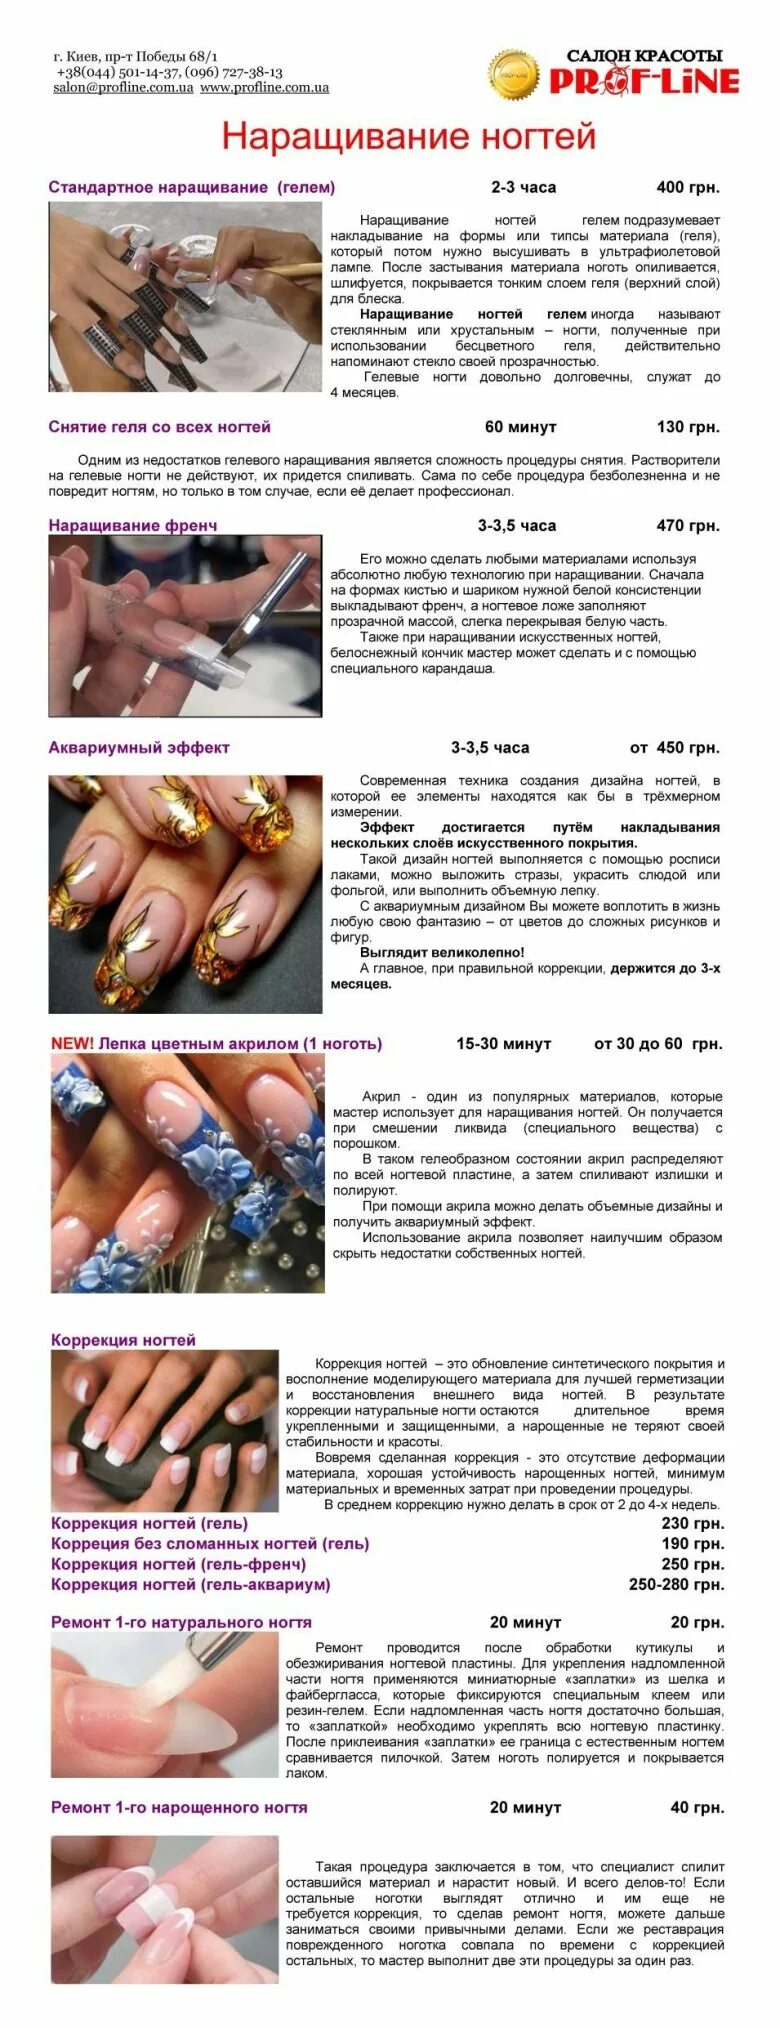 Наращивание порядок. Наращивание ногтей пошагово с описанием. Технология наращивания ногтей. Гель для моделирования ногтей. Порядок коррекции нарощенных ногтей гель лаком.